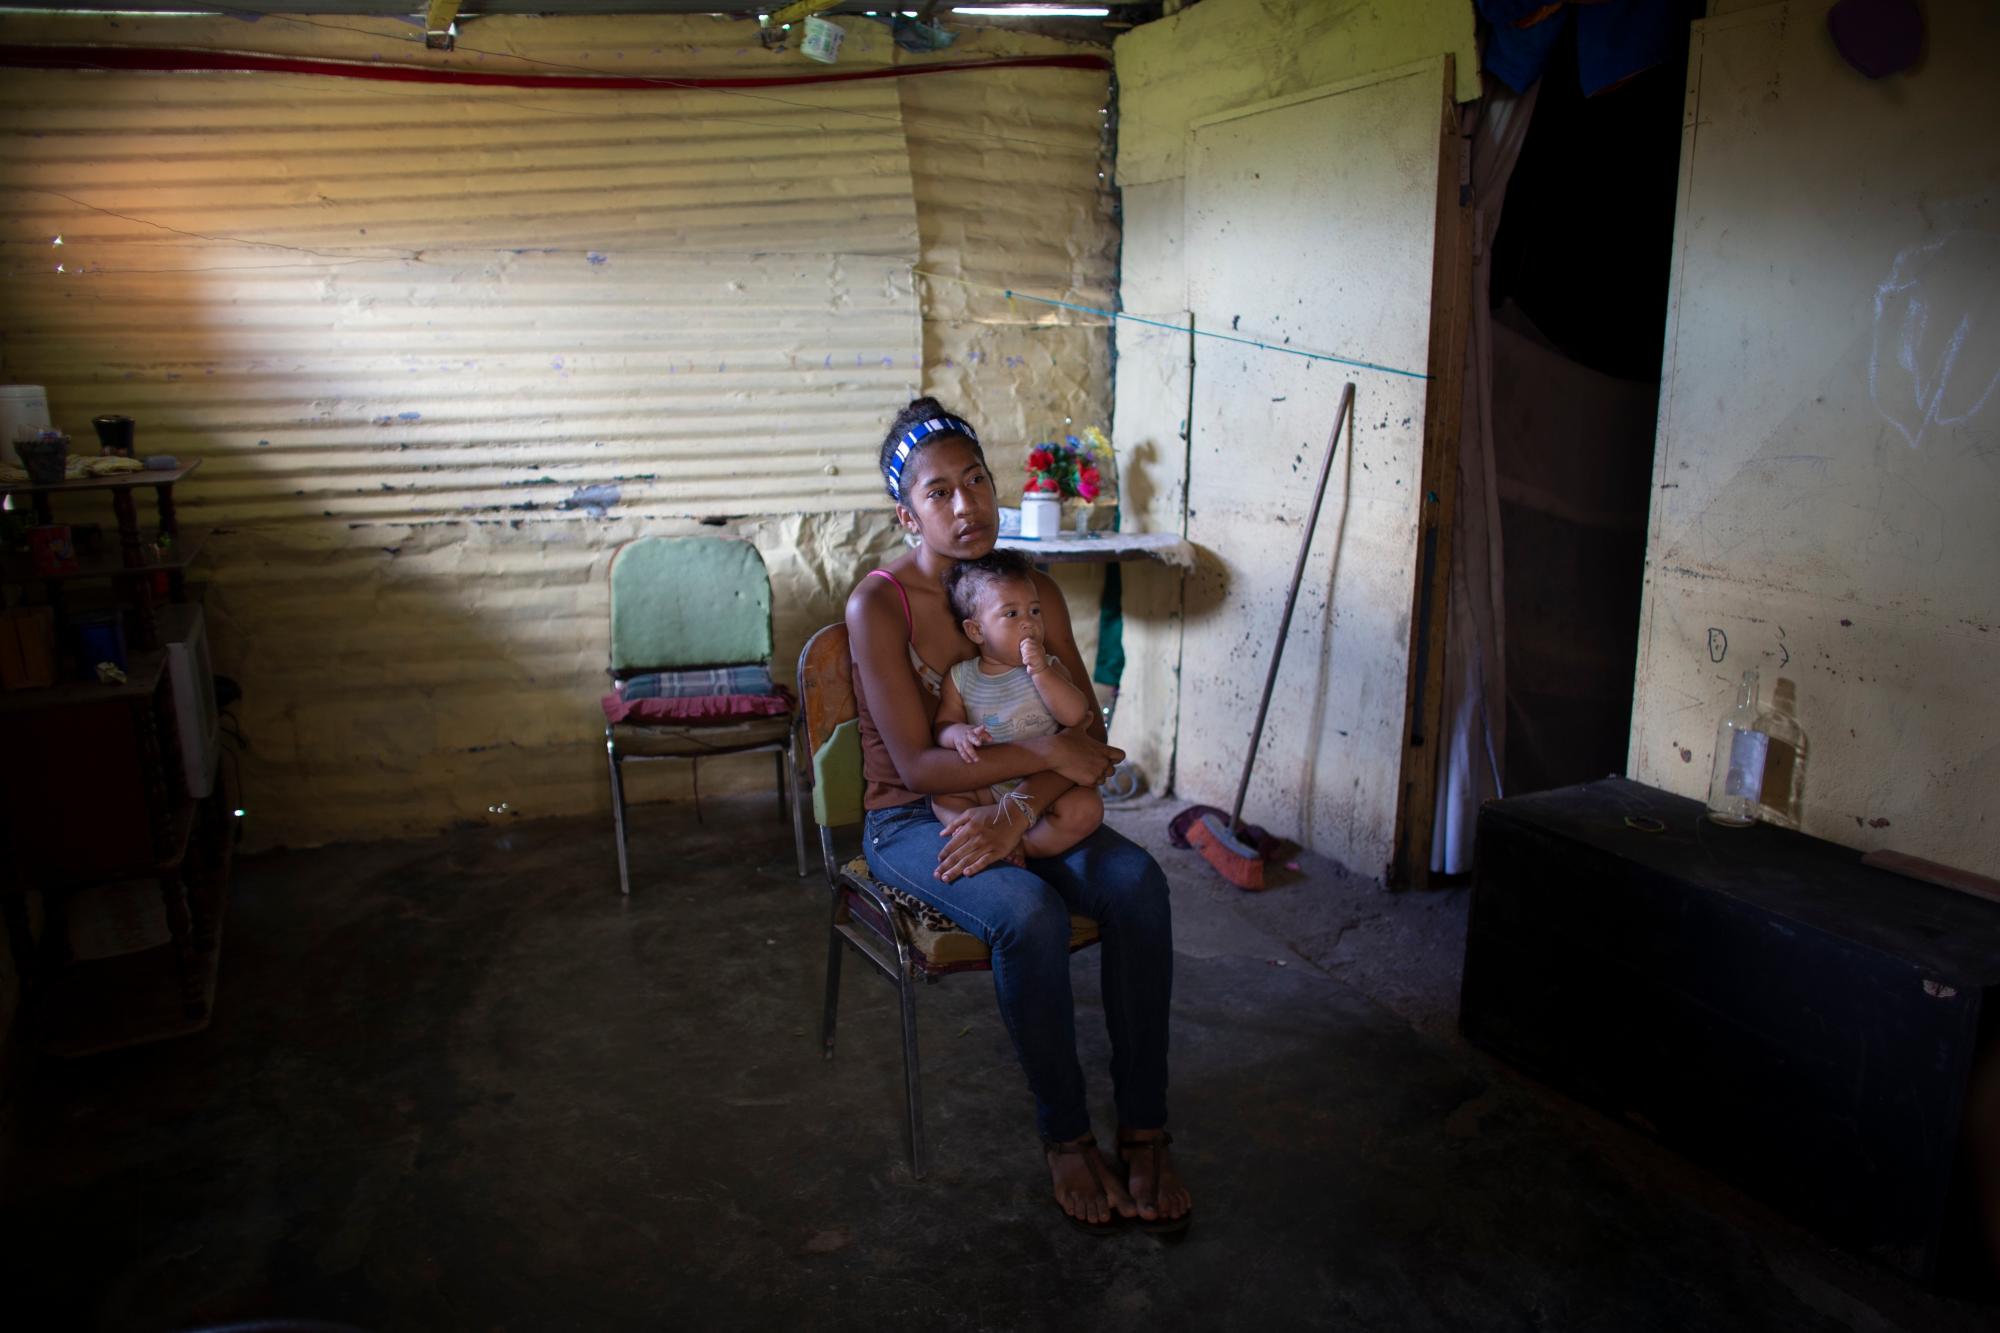 En esta foto tomada el 25 de julio de 2019, Karelys Herrera, de 15 años, sostiene a su bebé dentro de su casa durante una entrevista en el barrio de Caucaguita, en las afueras de Caracas, Venezuela. Herrera dijo que contemplaba el suicidio después de enterarse de que estaba embarazada a los 14 años. 